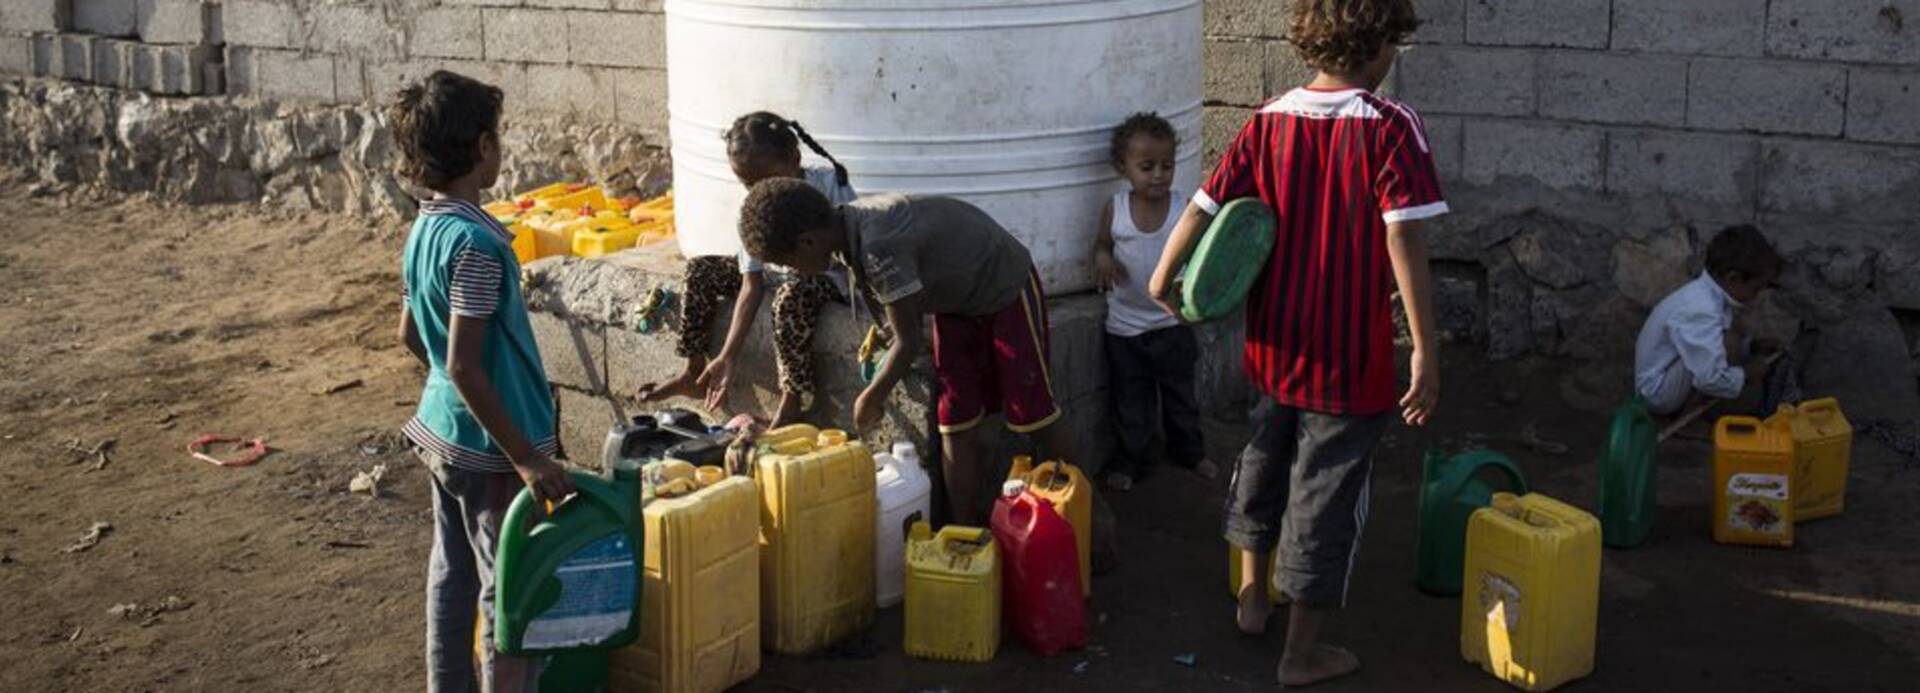 Kinder am Brunnen im Jemen